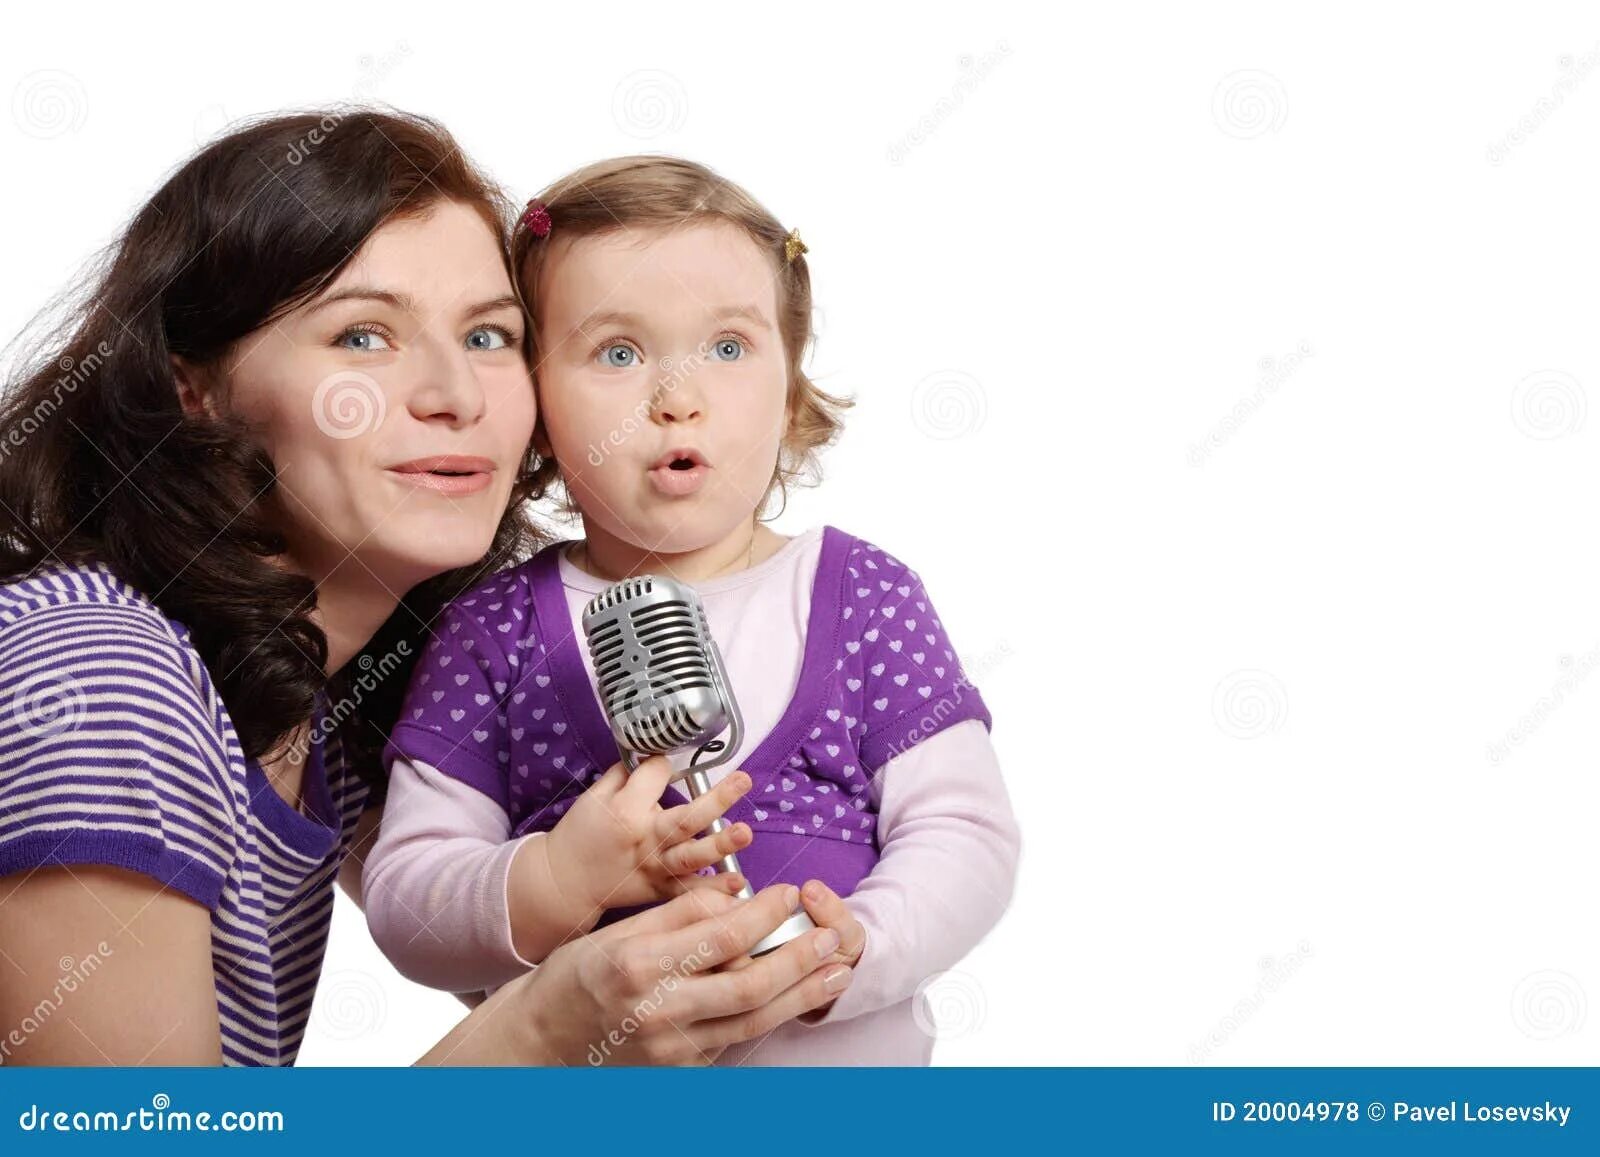 Дочь песня рингтон. Мама поет ребенку. Мама с дочкой поют. Мама поет в микрофон. Ребенок с мамой поют вместе.